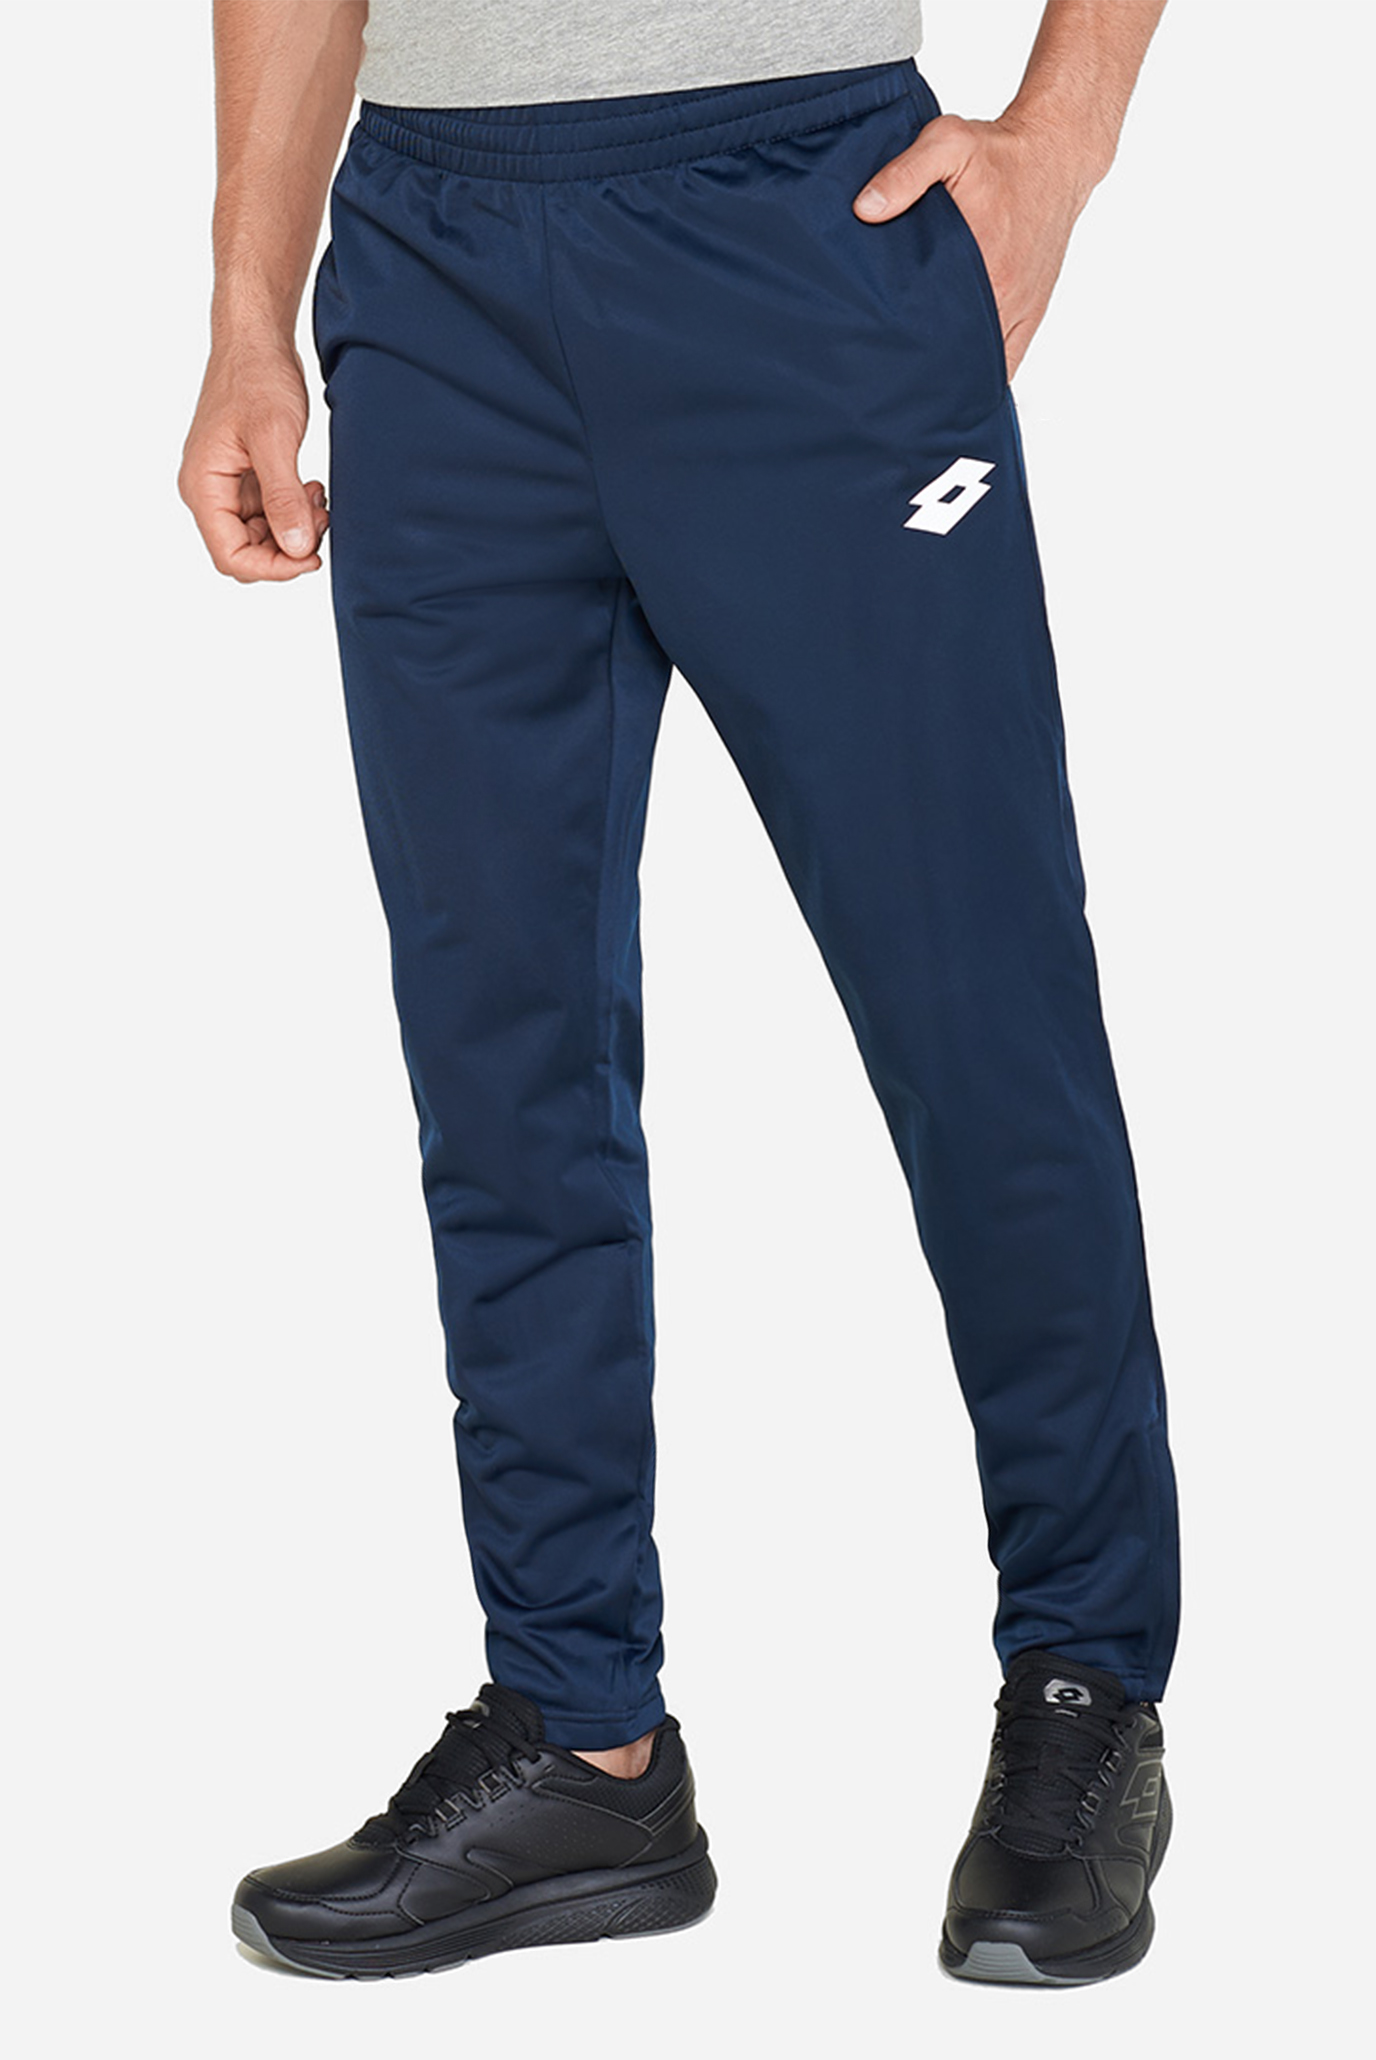 Чоловічі сині спортивні штани DELTA PANT PL 1